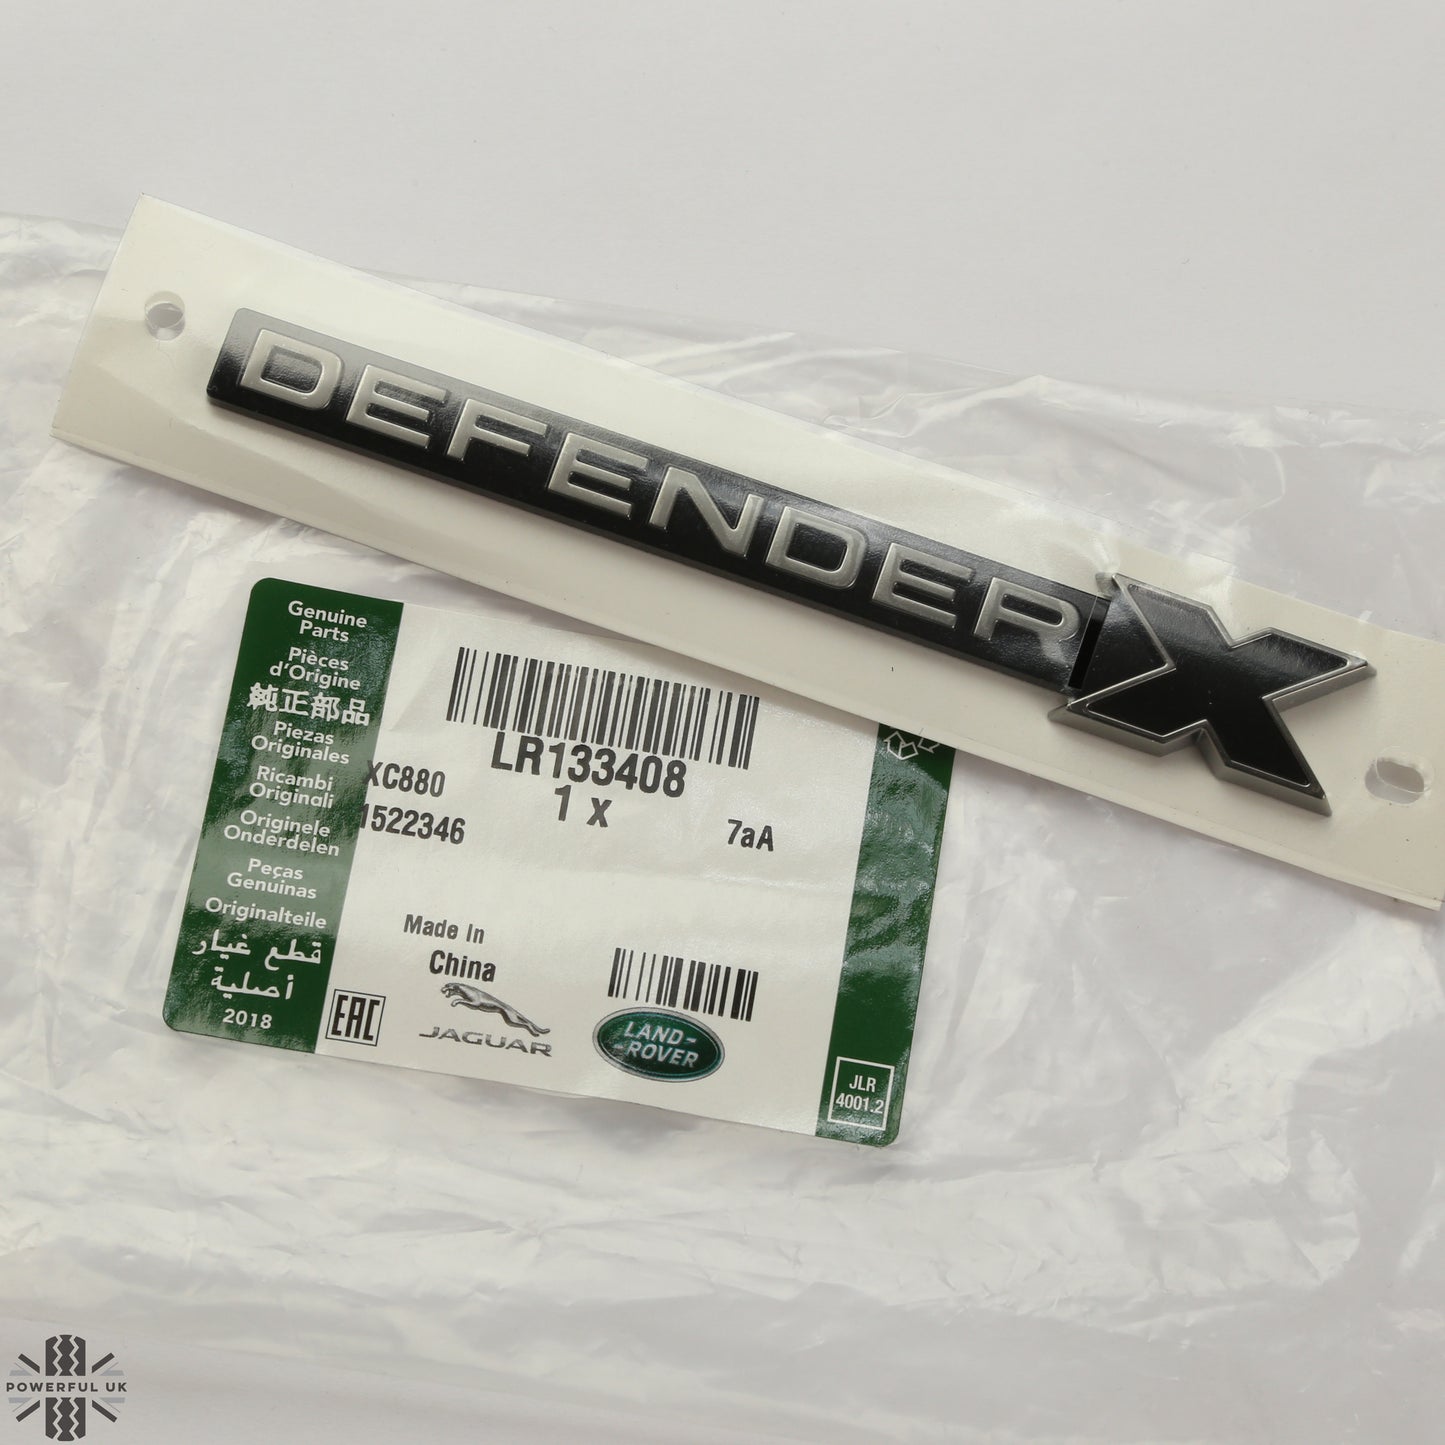 2x Genuine 'DEFENDER X' Badge for Land Rover Defender L663